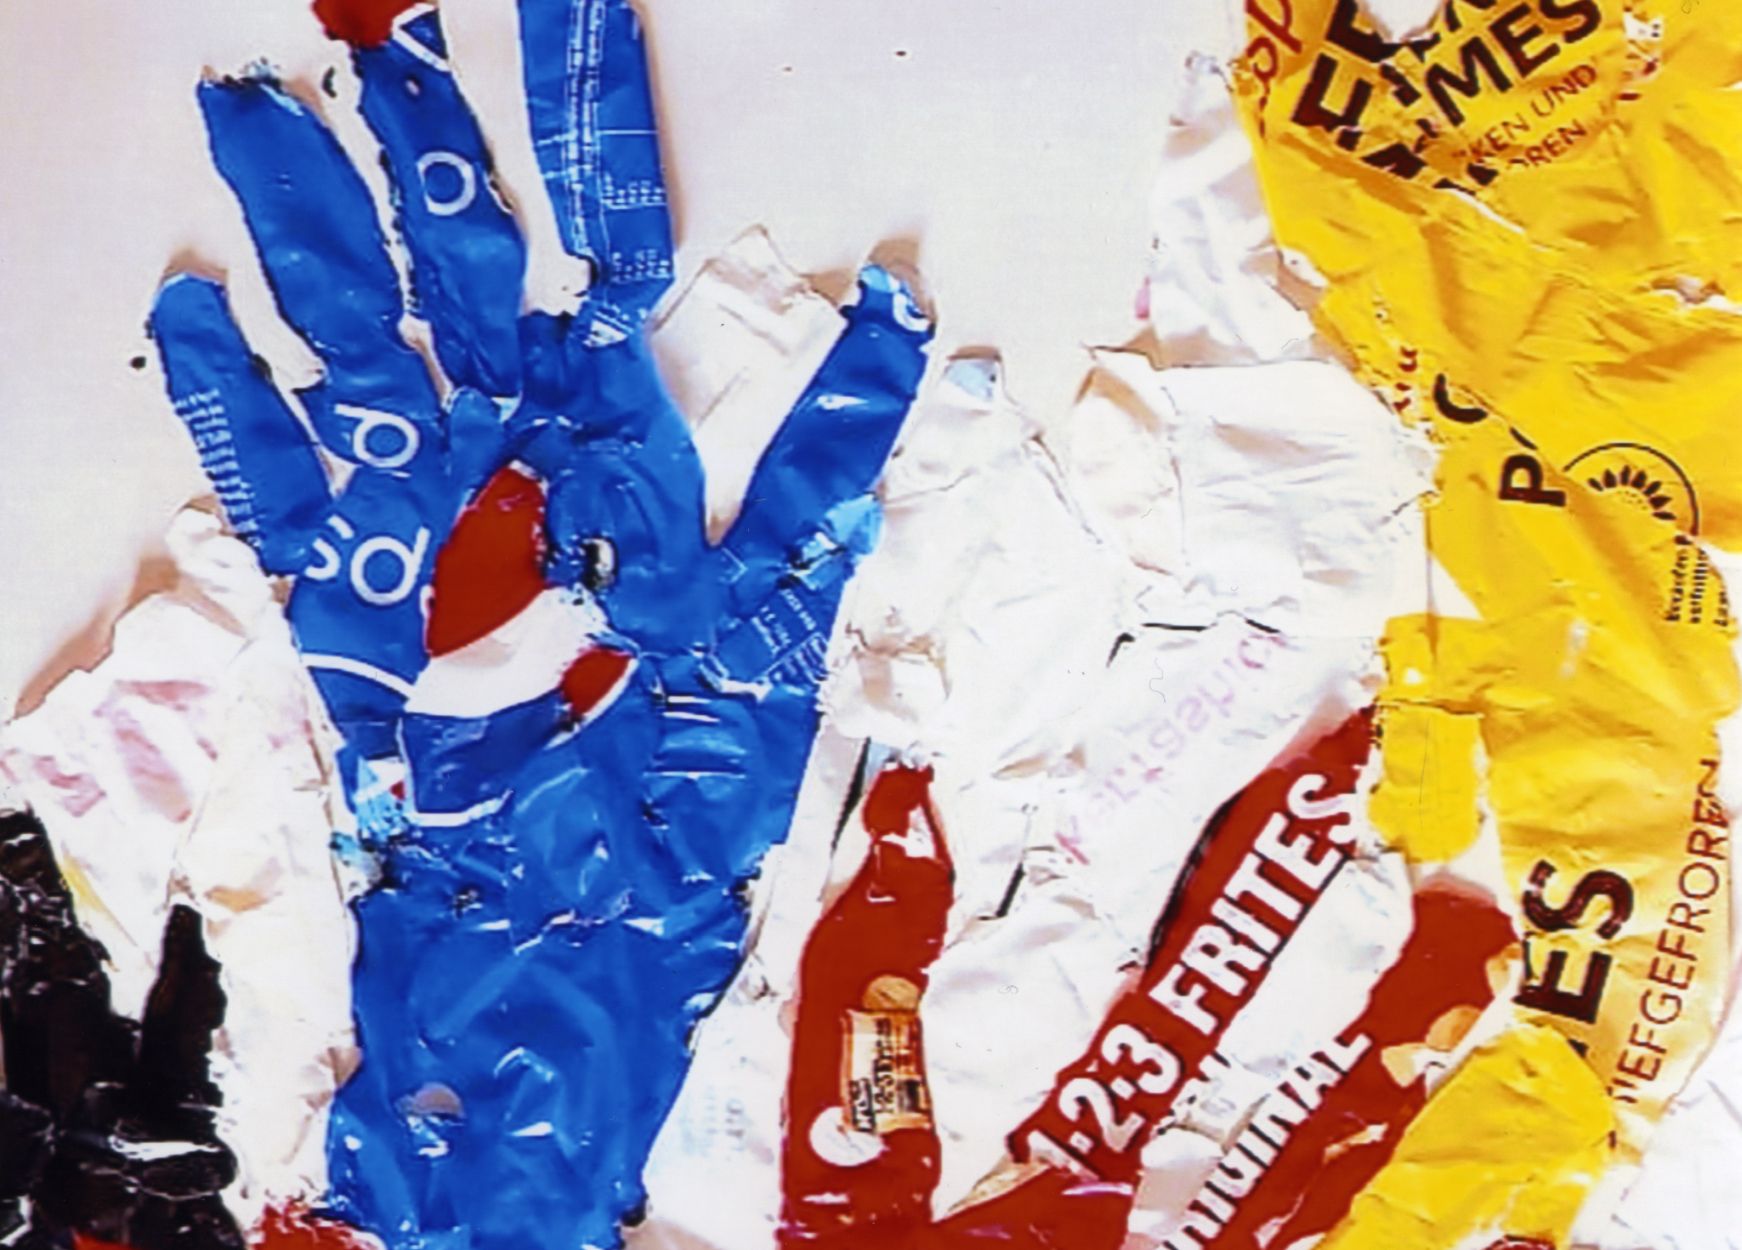 Zu sehen sind Hände, die in Collage-Technik aus verschiedenen farbigen Stücken Thermoplast zusammengesetzt worden sind.